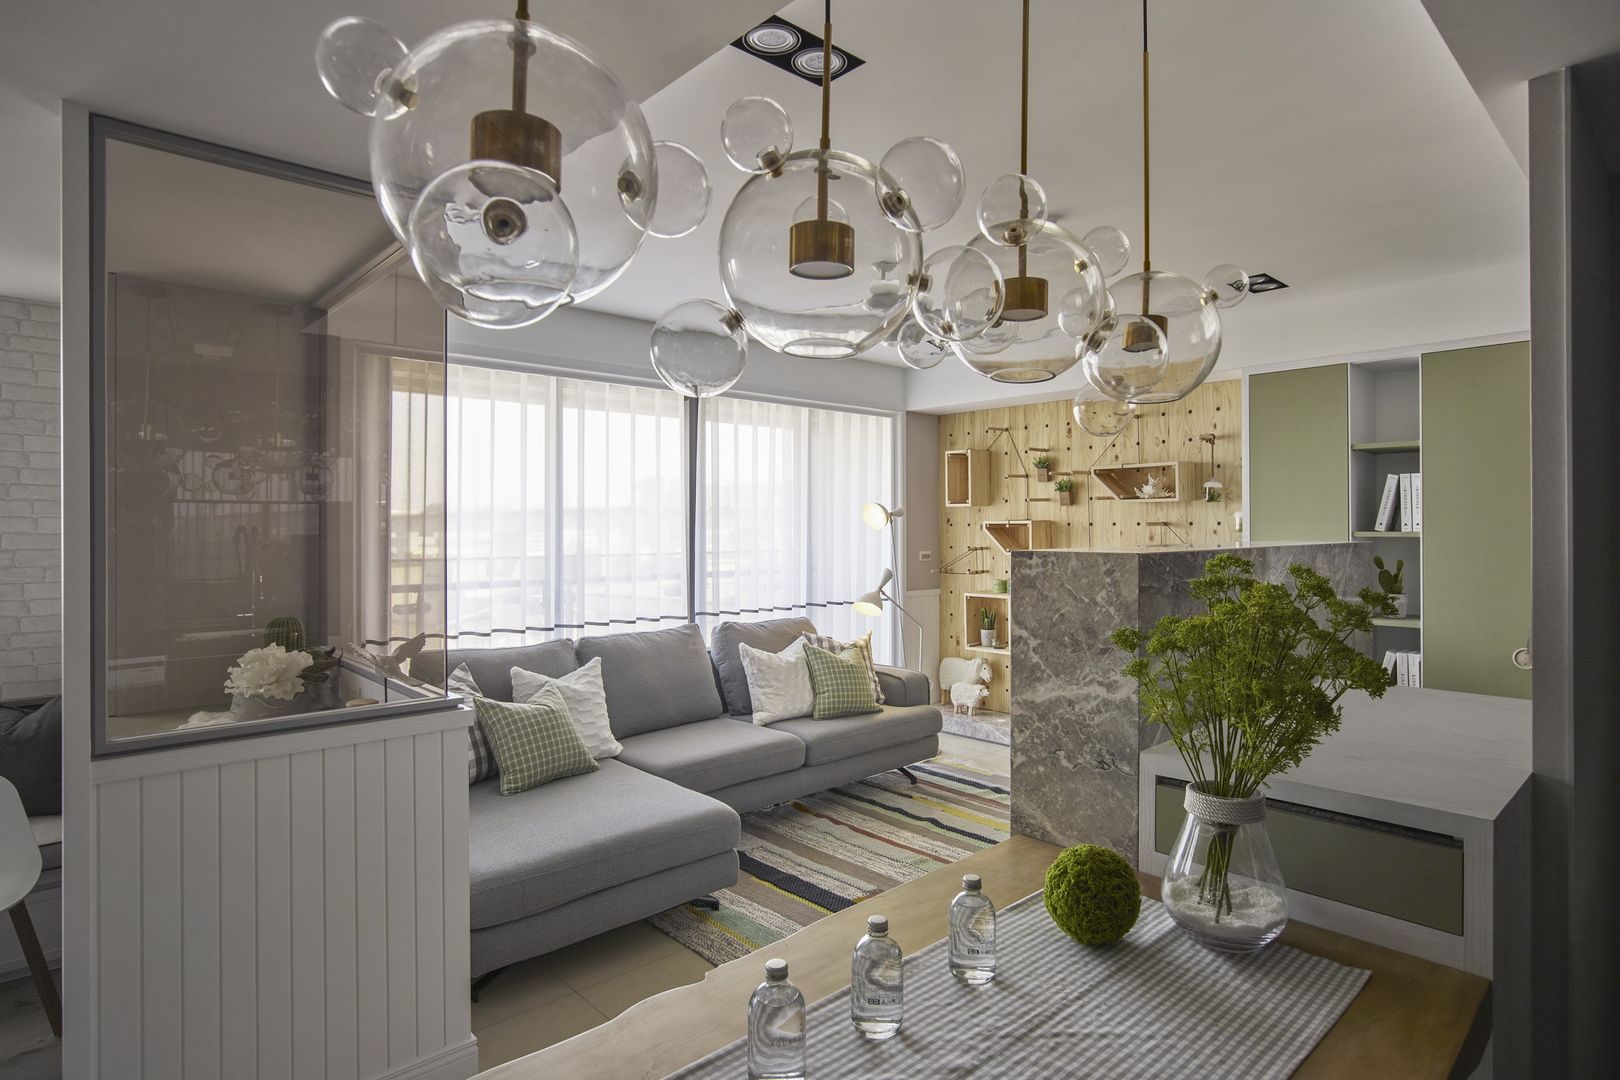 春神-現代寫意, 辰林設計 辰林設計 Scandinavian style living room